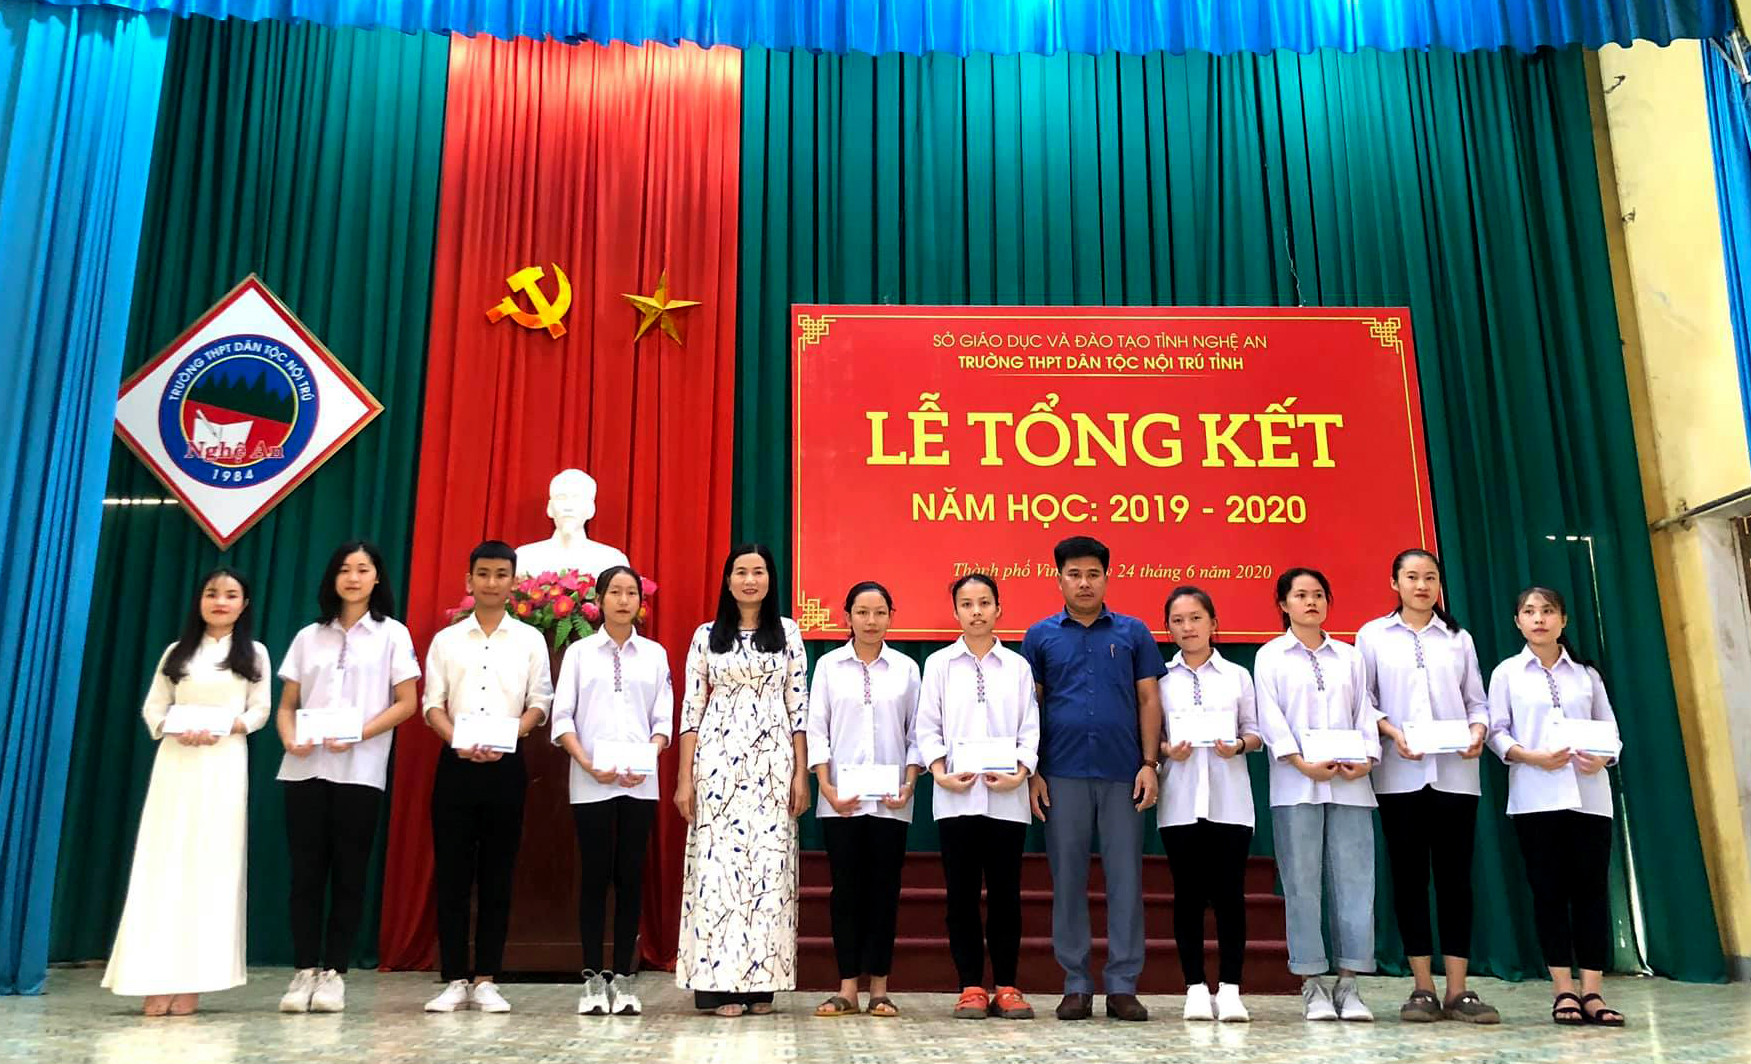 Cô giáo Nguyễn Thị Kiều Hoa - Hiệu trưởng nhà trường khen thưởng cho những học sinh có kết quả học tập tốt trong năm học 2019 - 2020. Ảnh: PV